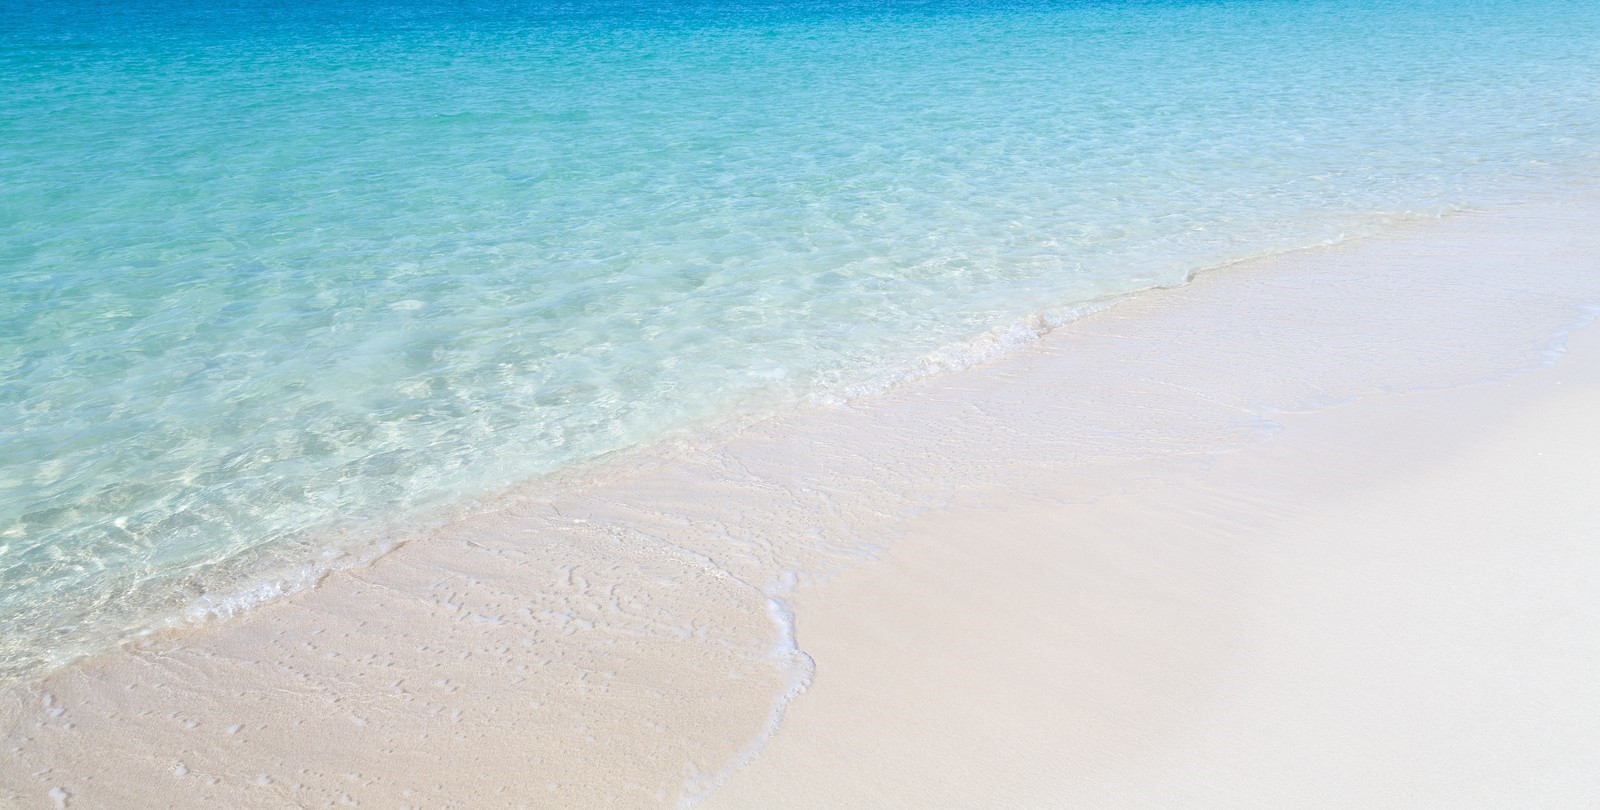 ザキントス島観光へgo 綺麗な海が広がる絶景 紅の豚の隠れ家がある Travelnote トラベルノート